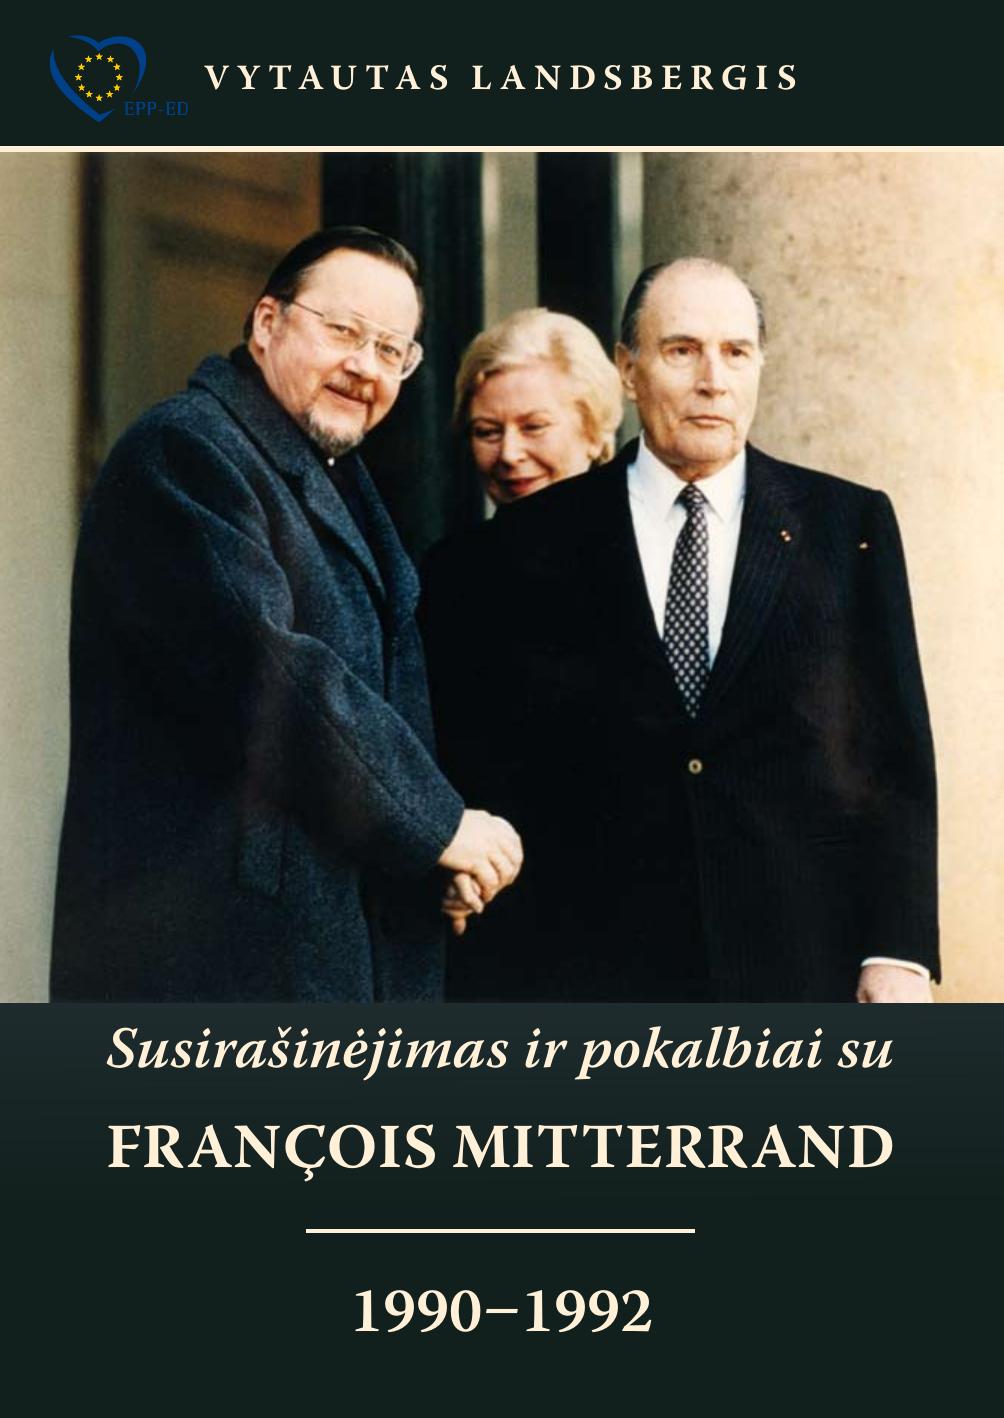 Susirašinėjimas ir pokalbiai su François Mitterrand 1990-1992